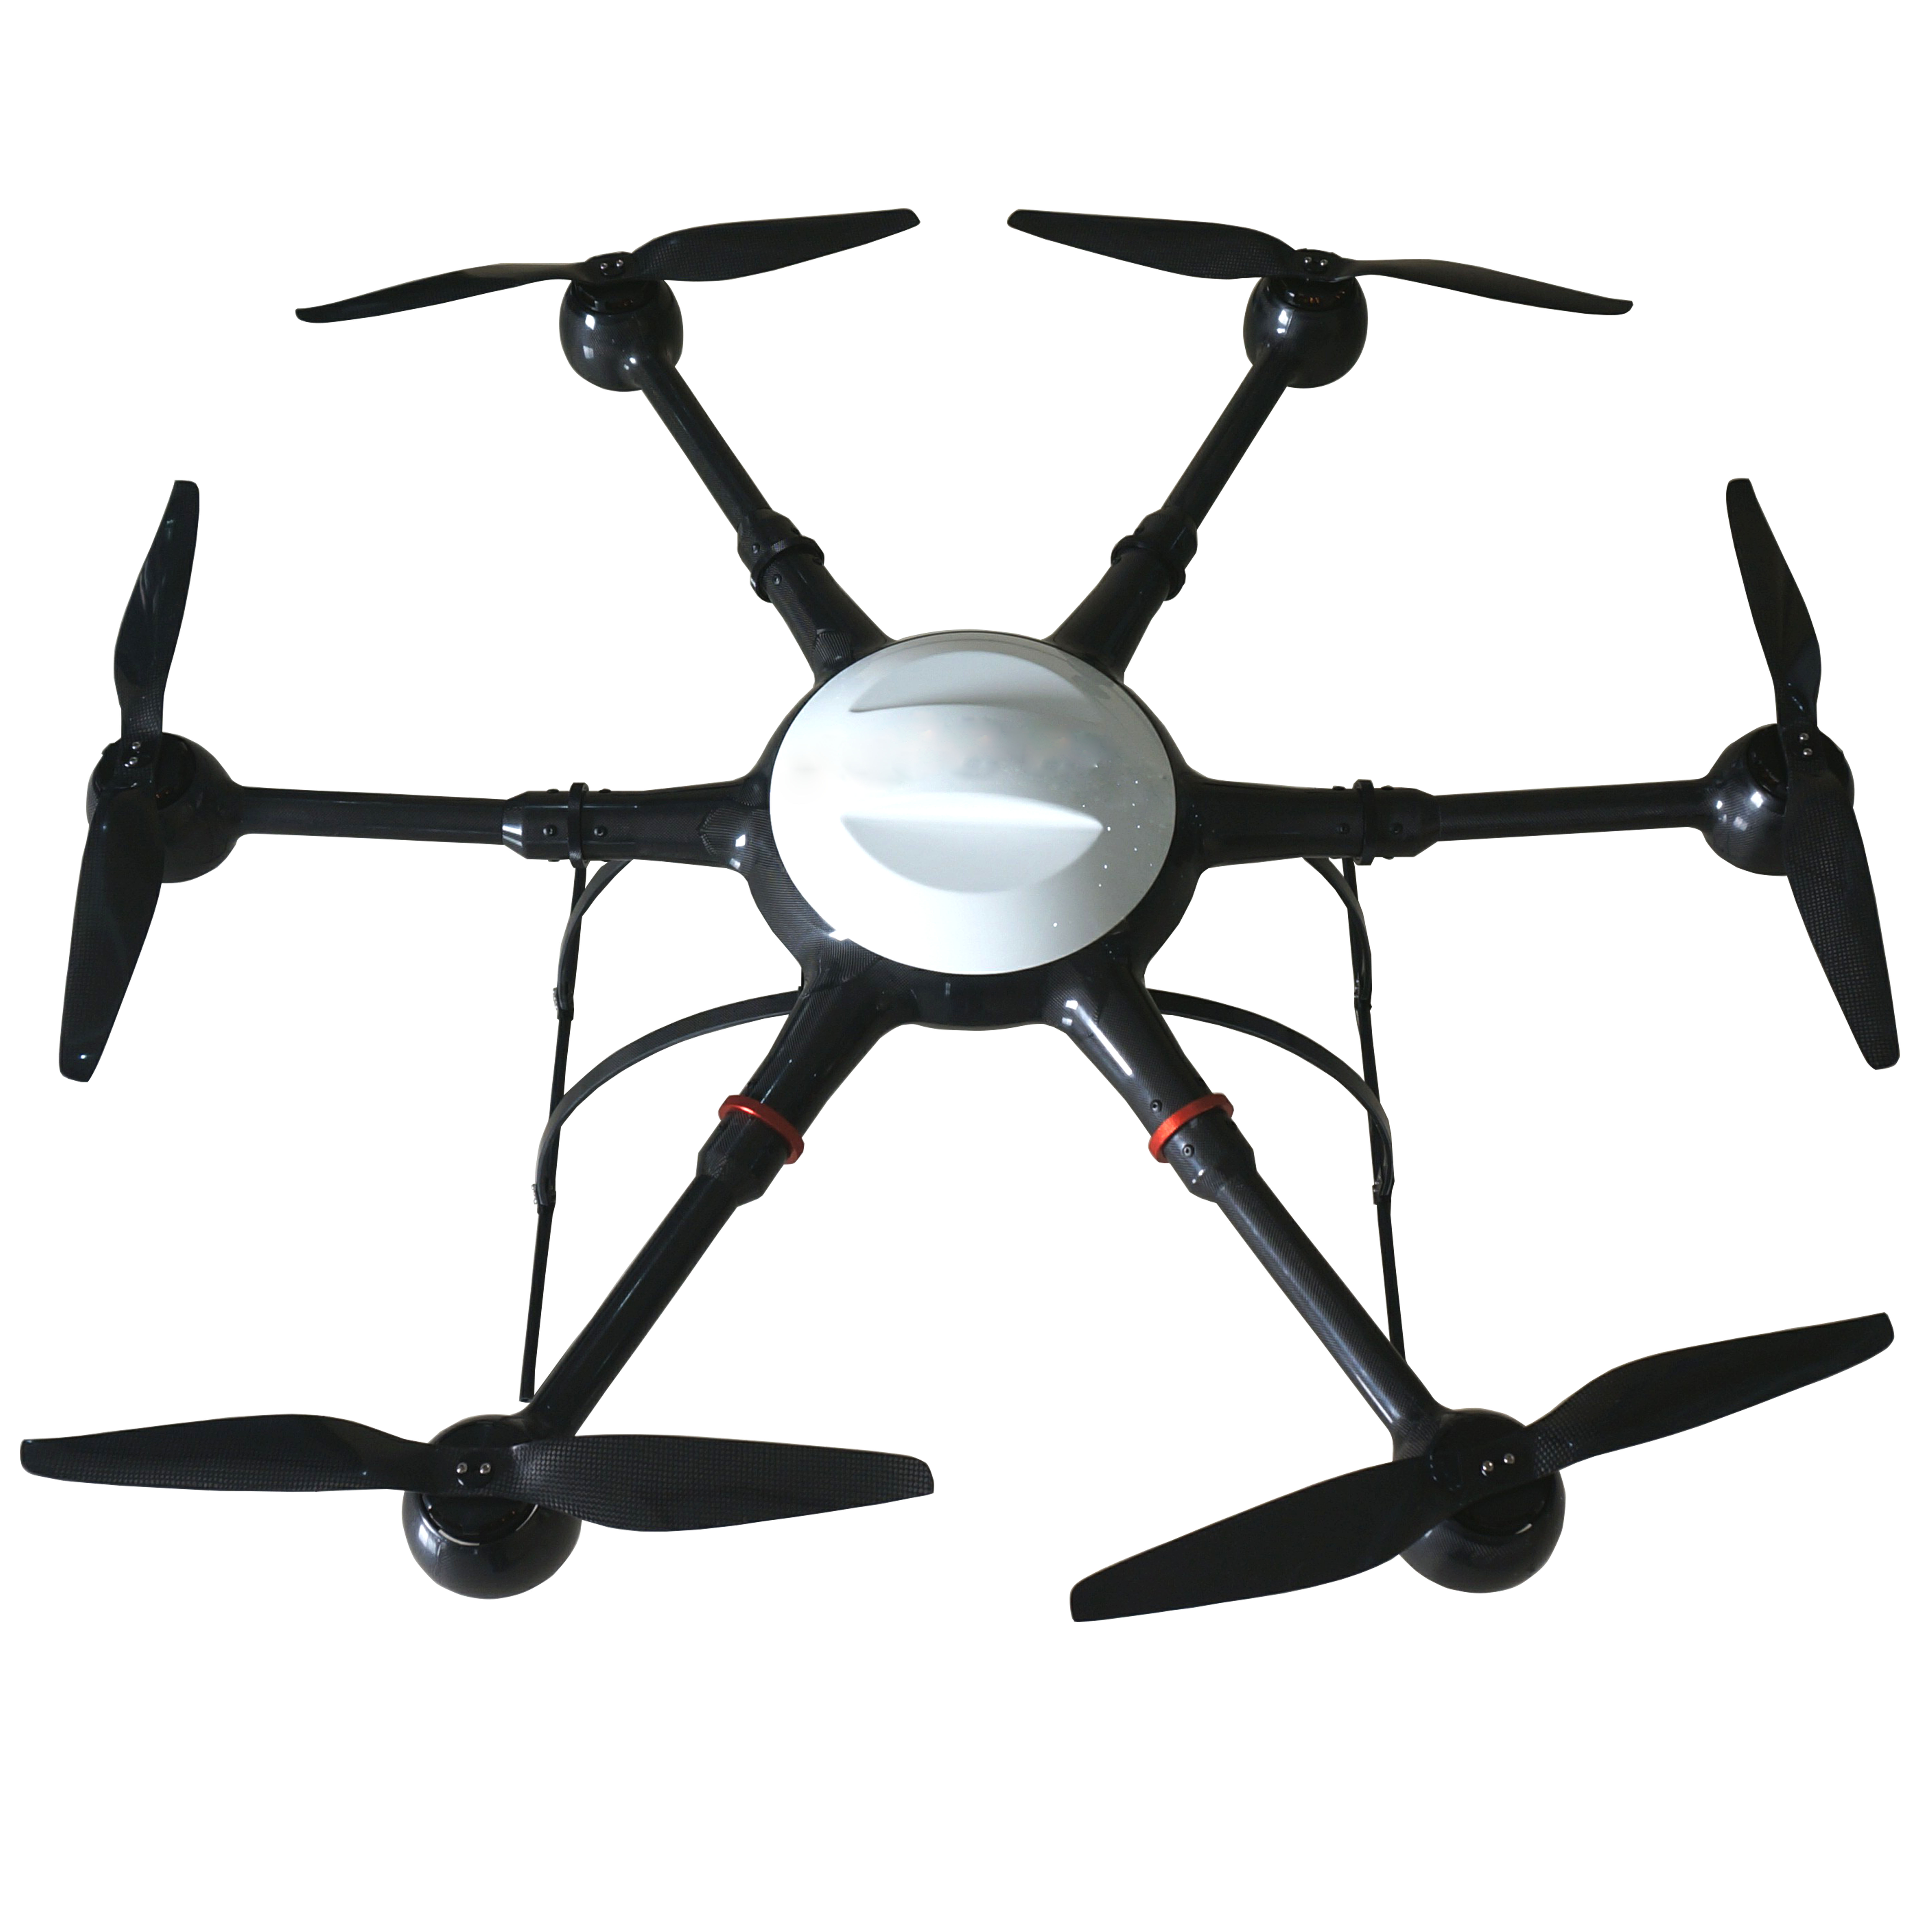 GS-1100  industrial uav drone